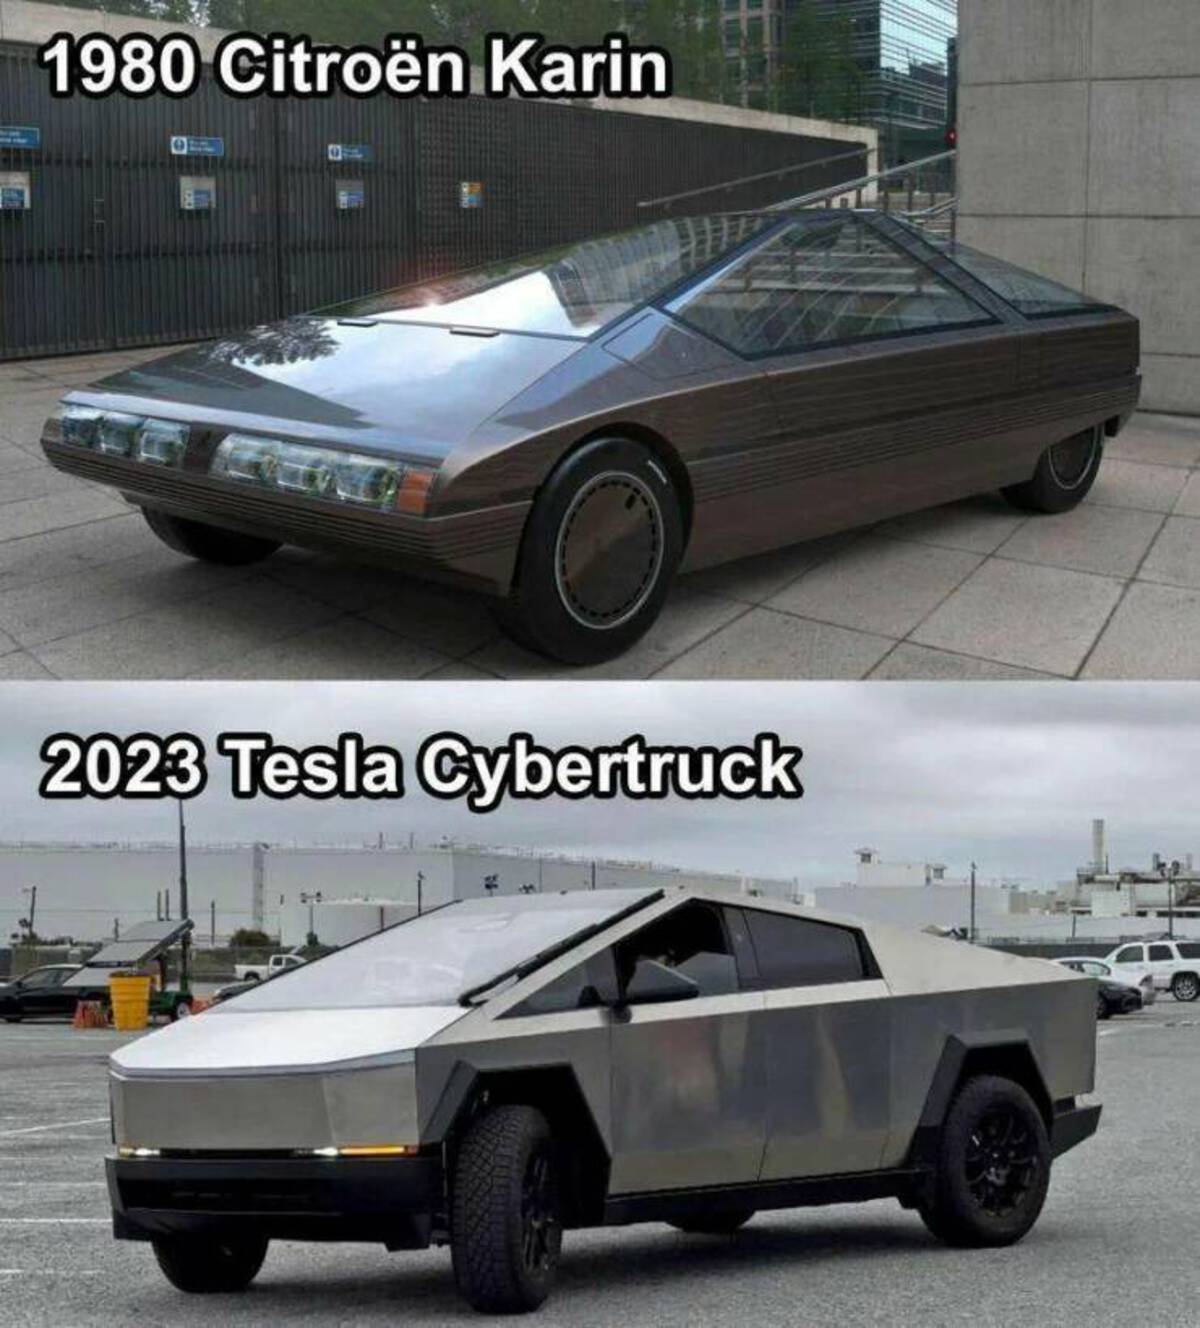 citroen karin 1980 - 1980 Citron Karin 2023 Tesla Cybertruck